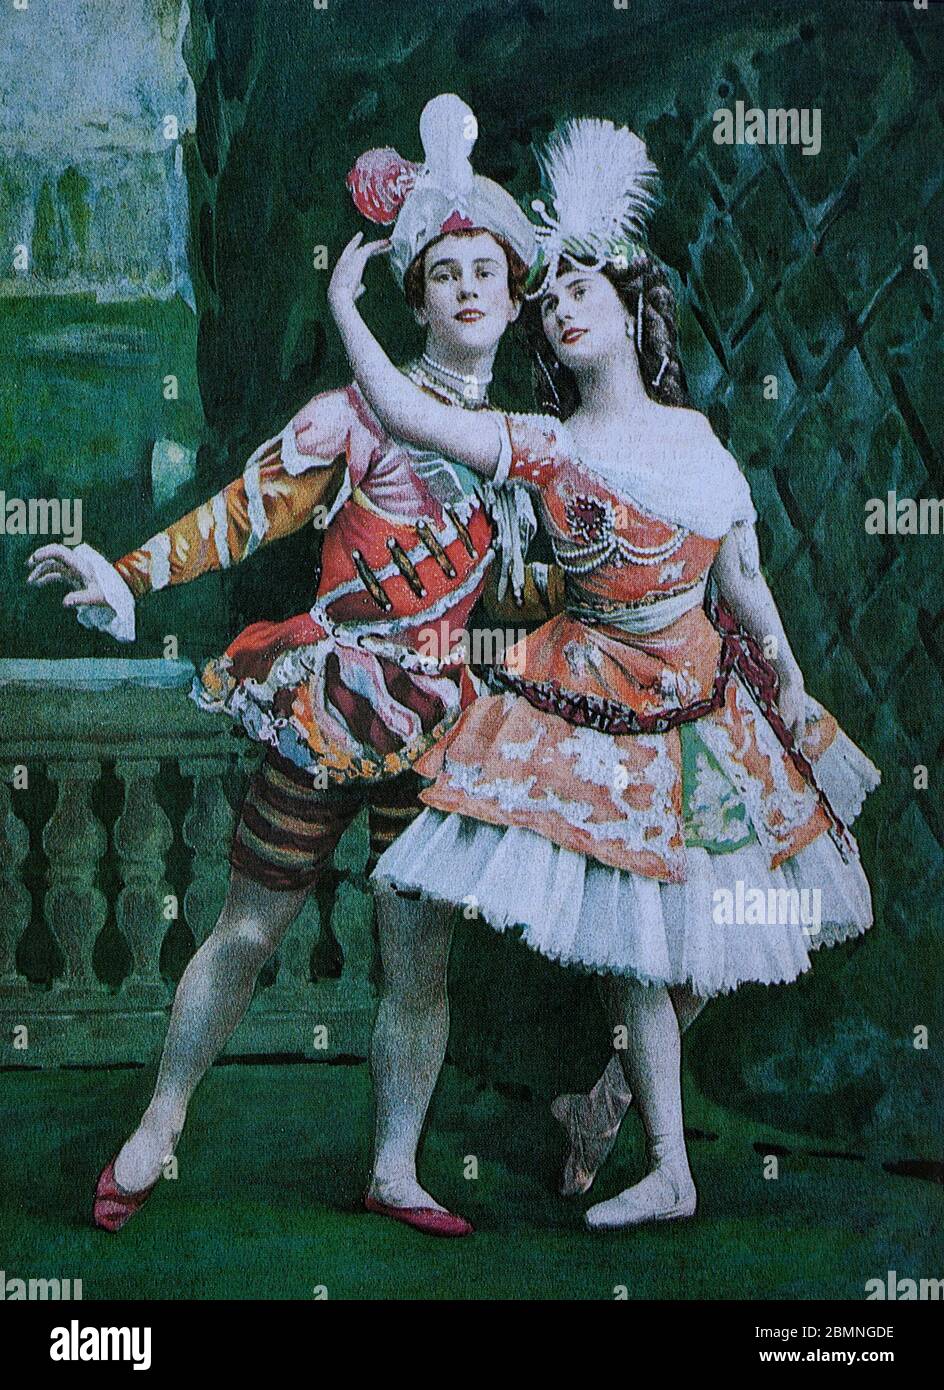 Danseuses russes Vaslav Nijinsky (1889-1950), danseuse de ballet et chorégraphe citée comme la plus grande danseuse masculine du début du XXe siècle et Anna Pavlova (1881-1931), une ballerine prima russe de la fin du XIXe siècle et du début du XXe siècle. Du journal français 'le Theatre', du 1er mai 1909. Banque D'Images